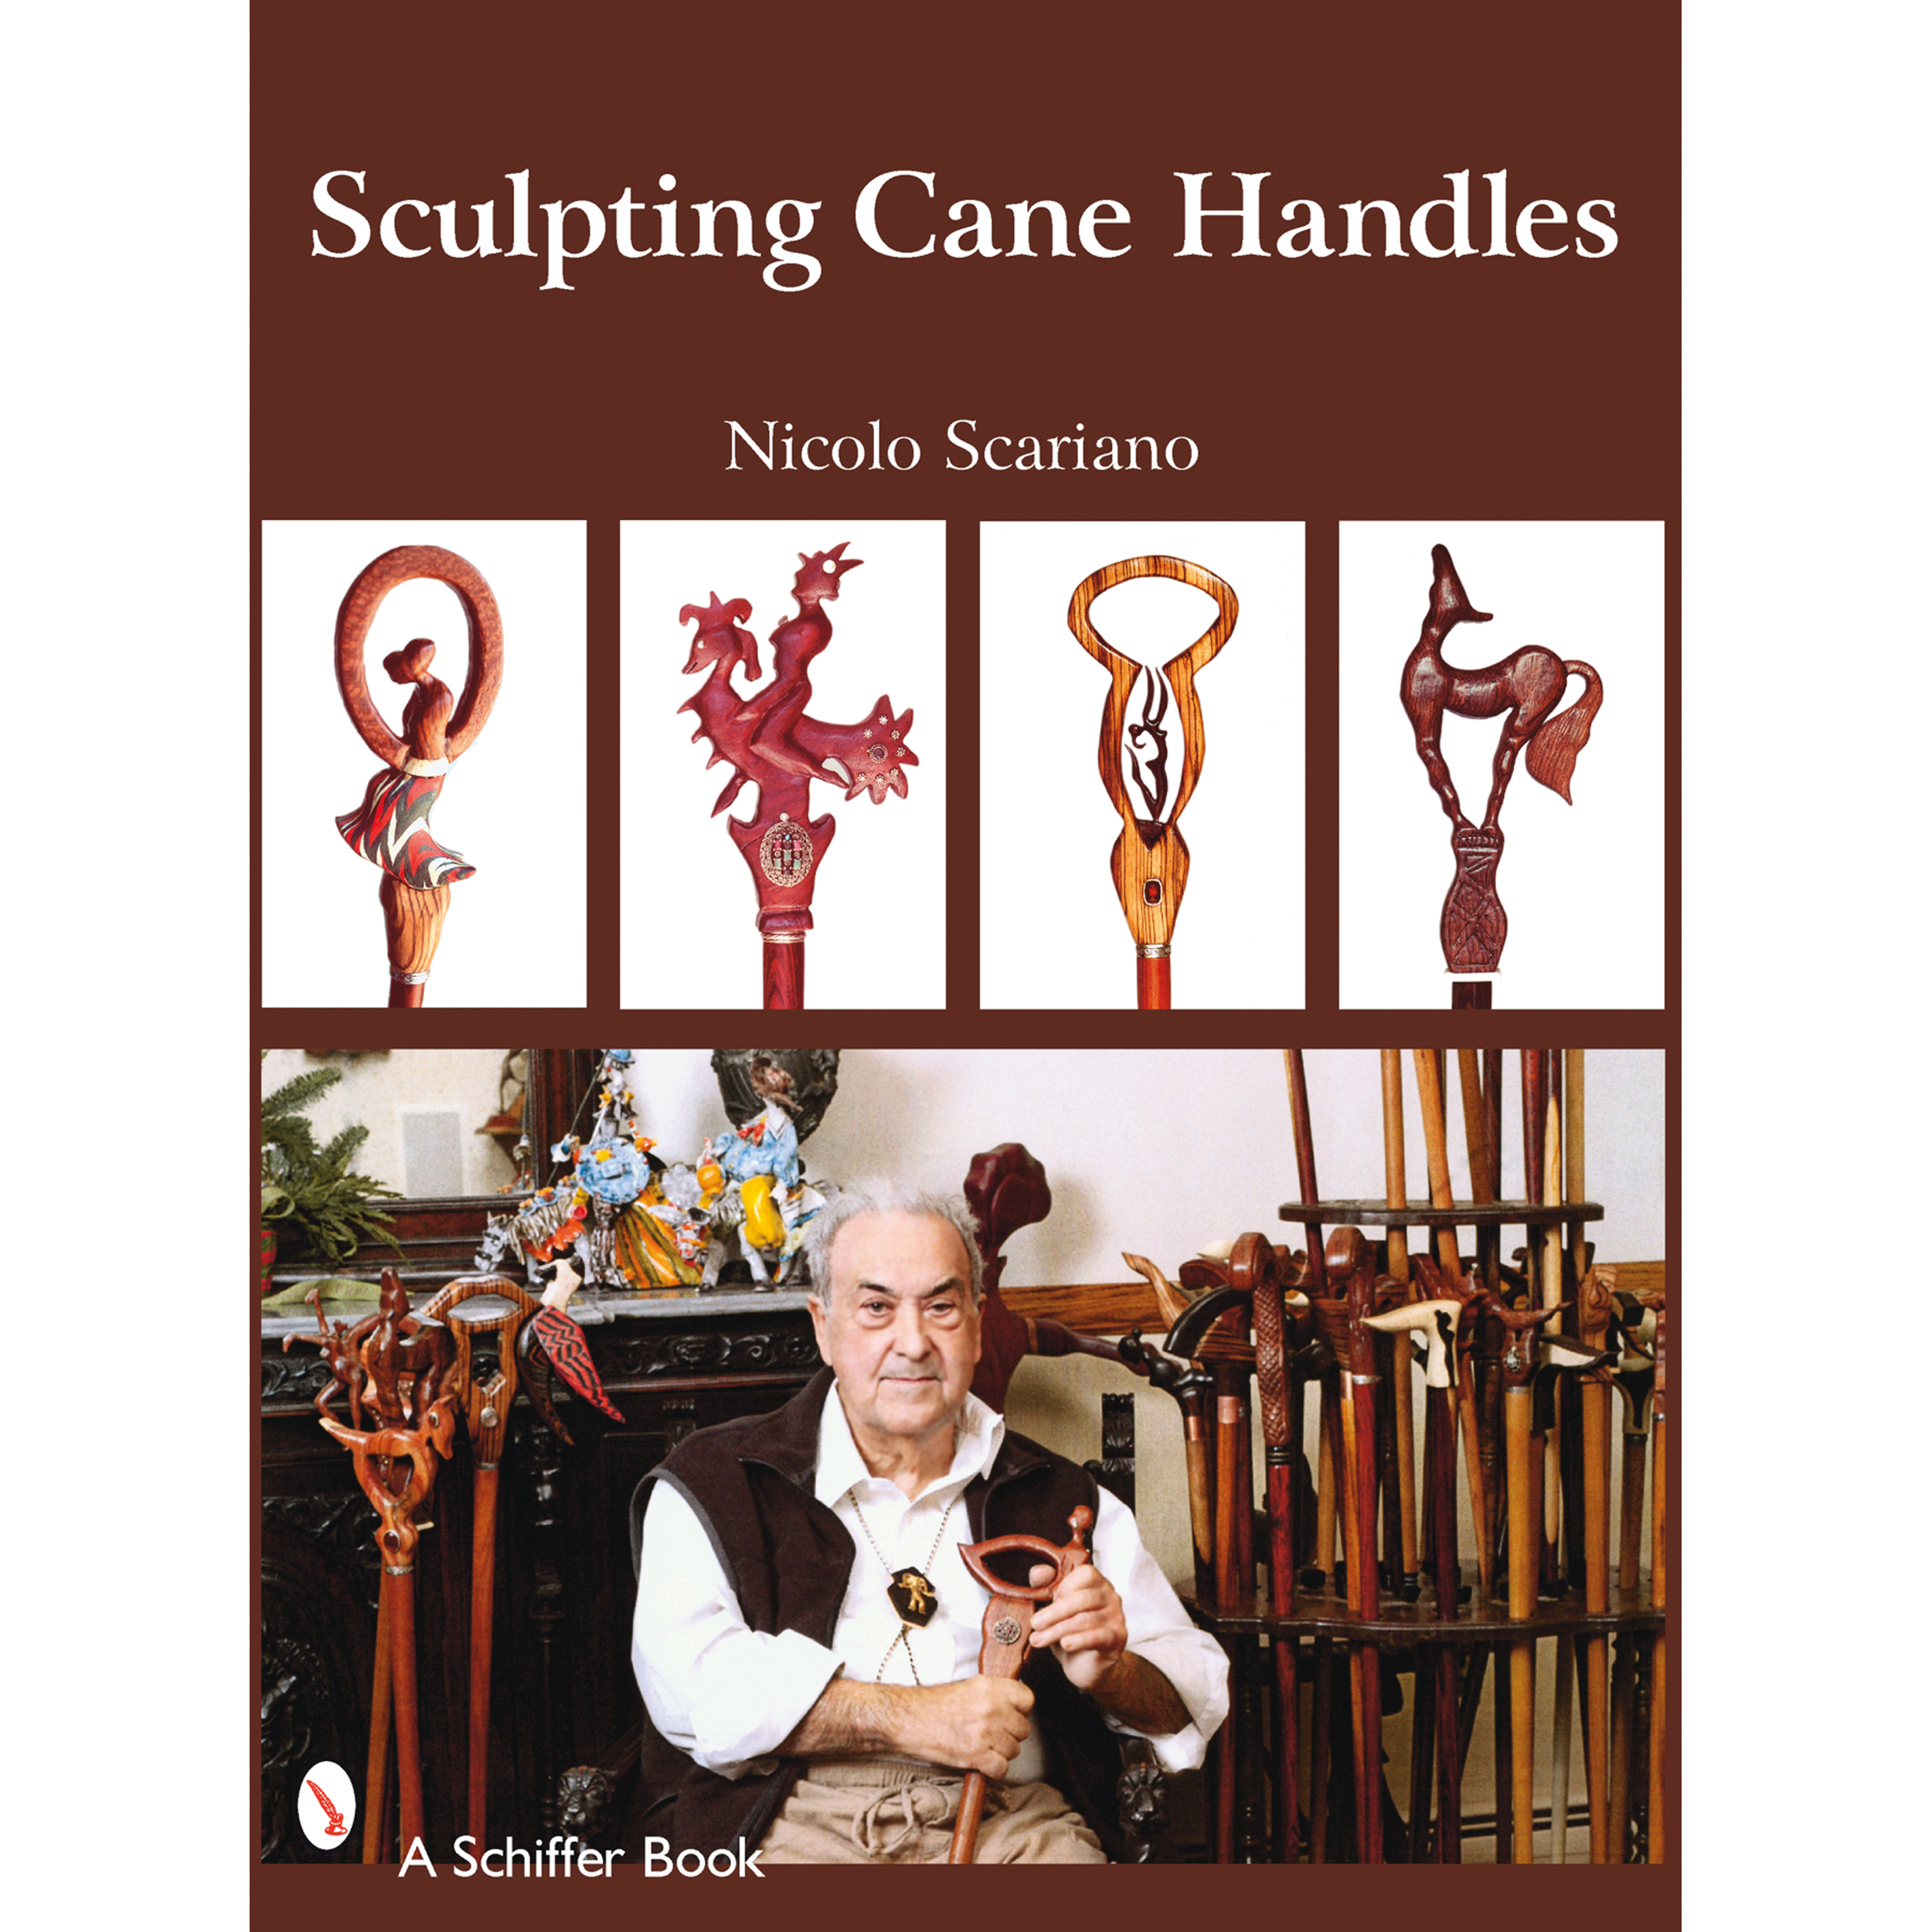 Sculpting Cane Handles